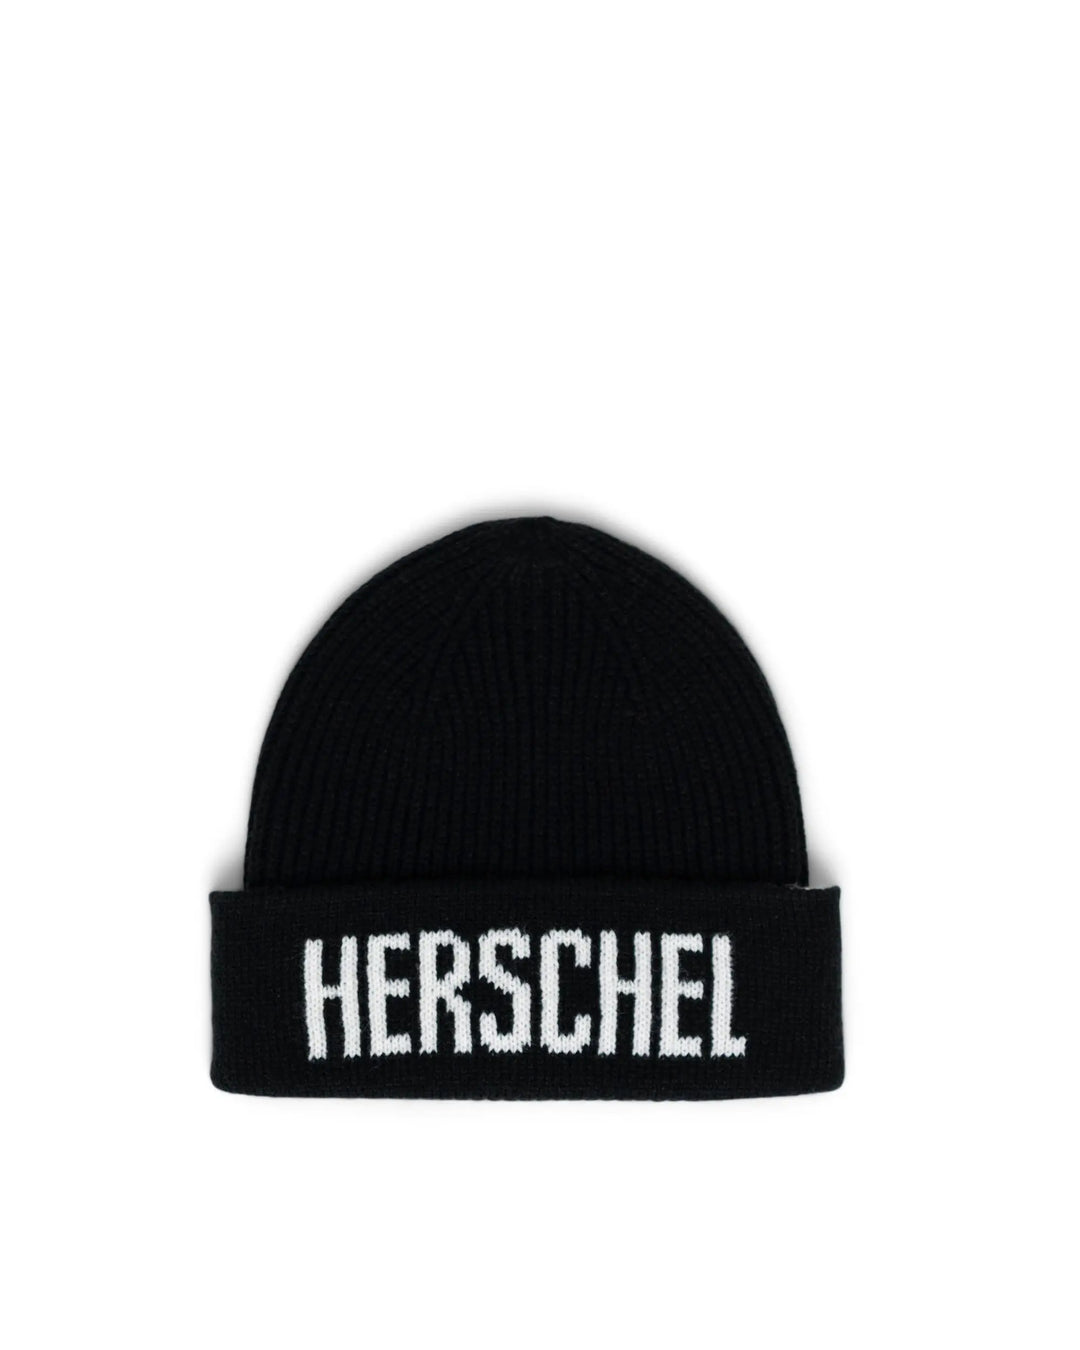 Herschel Supply Co. Polson Knit Logo Beanie - Black - Sun Diego Boardshop